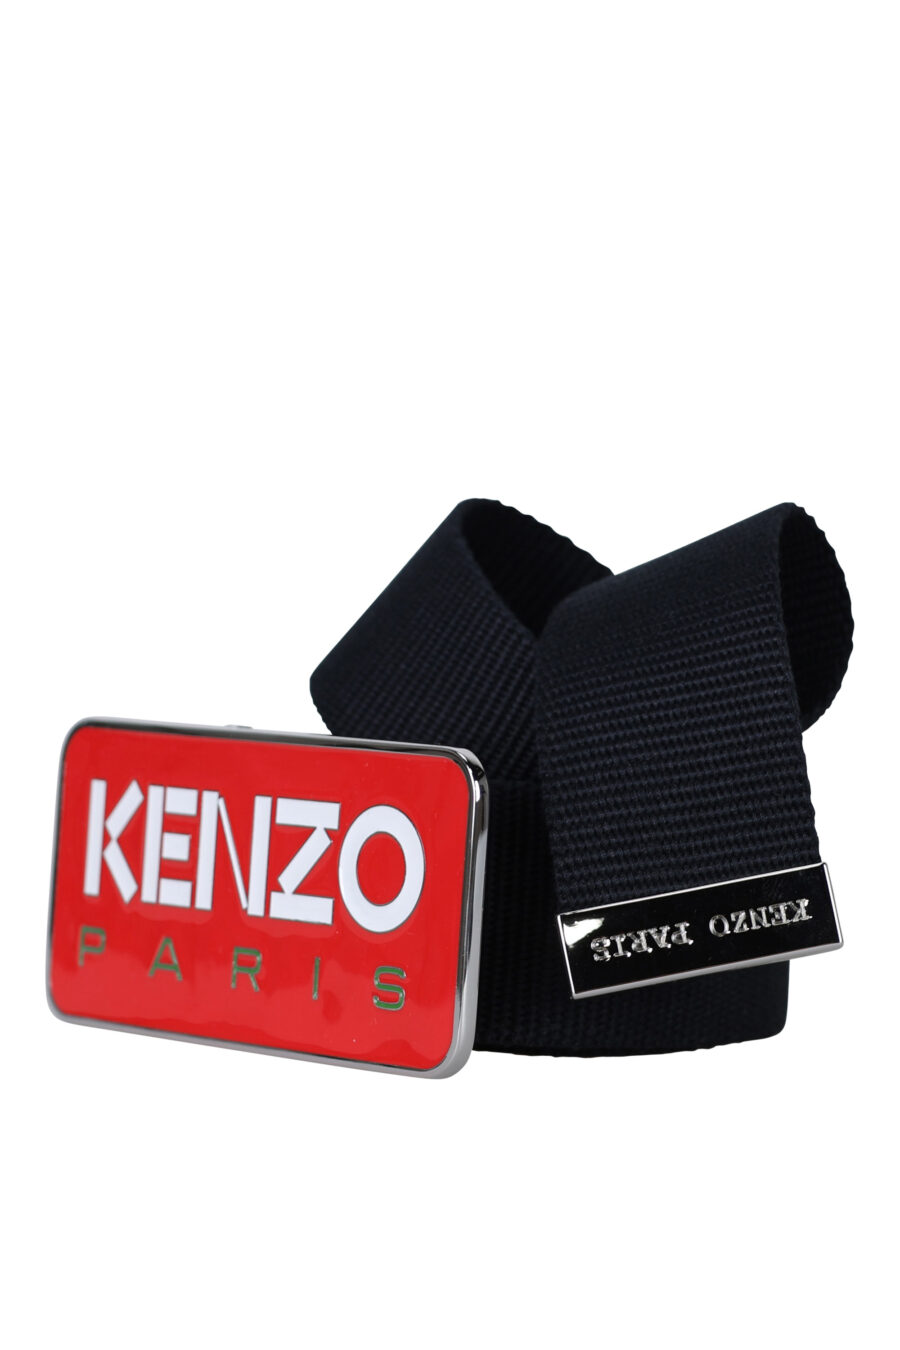 Cinturón negro con hebilla roja logo "kenzo paris" - 3612230547339 1